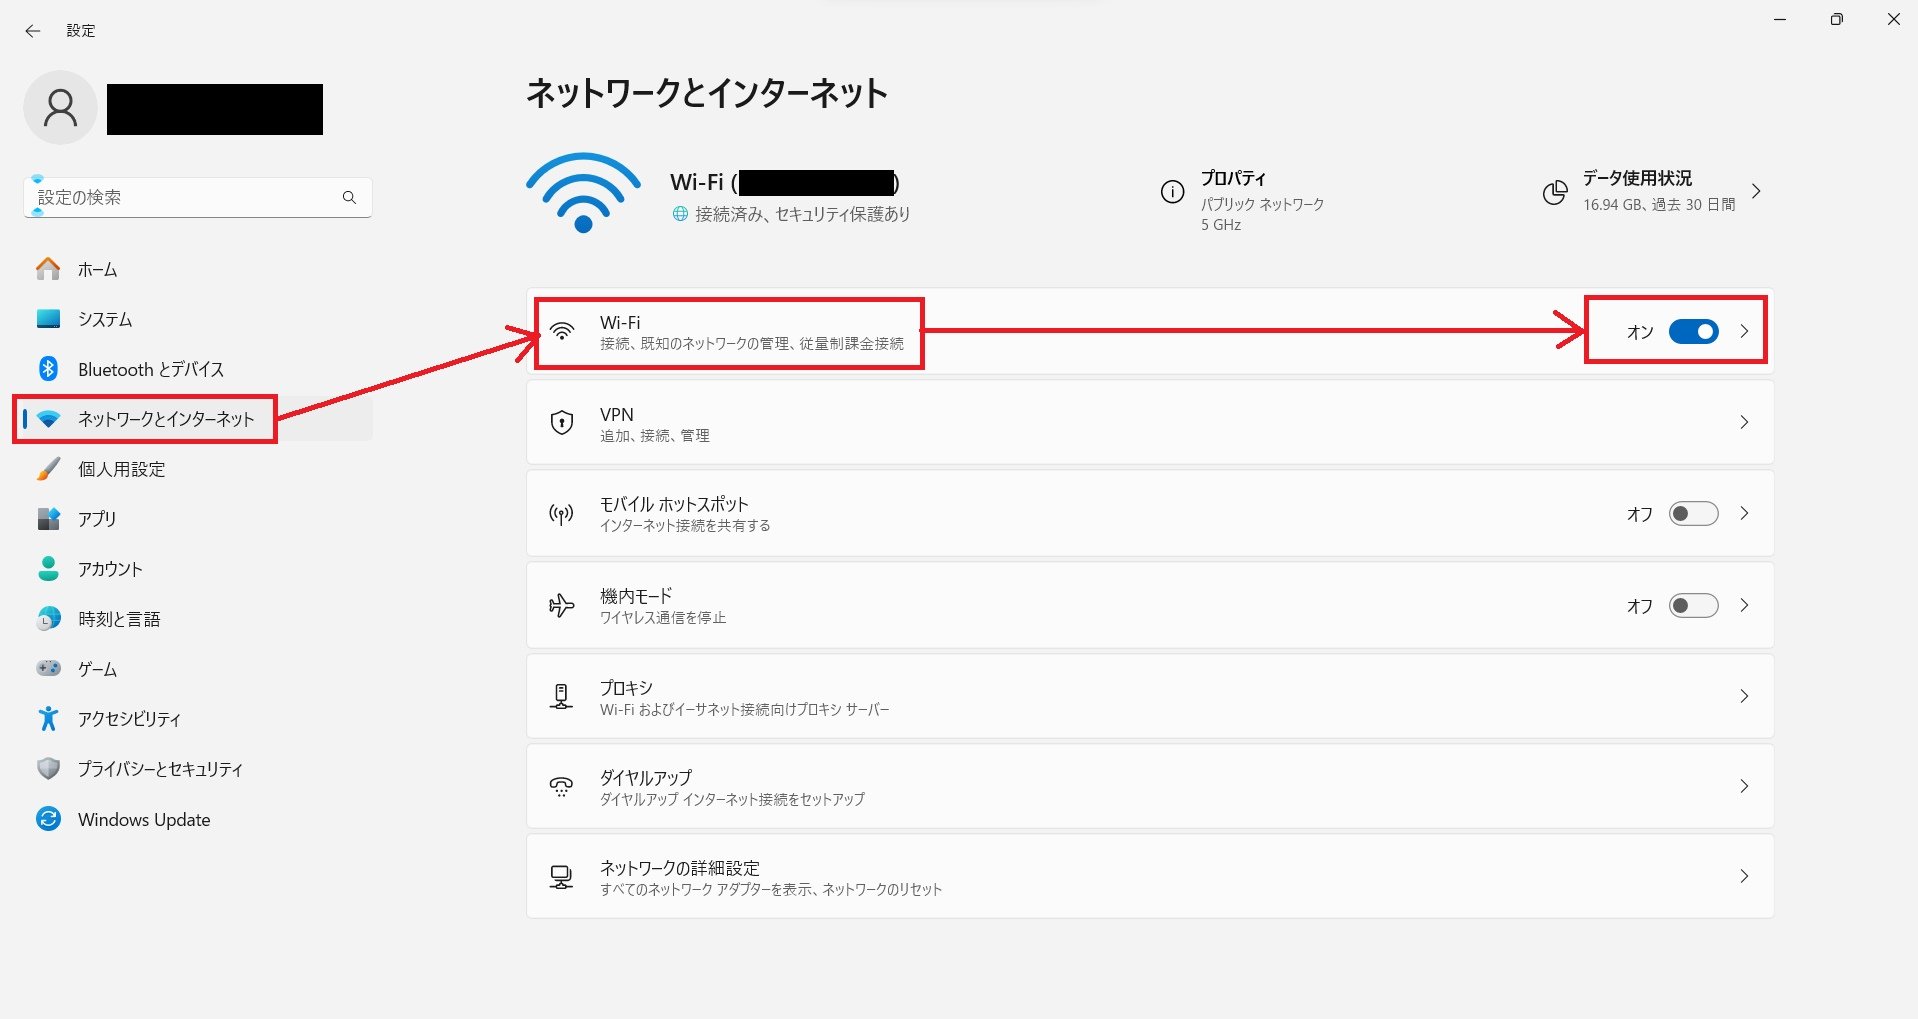 開いた画面から「ネットワークとインターネット」を選択し、Wi-Fiの項目右側にあるボタンを「オン」にしましょう。